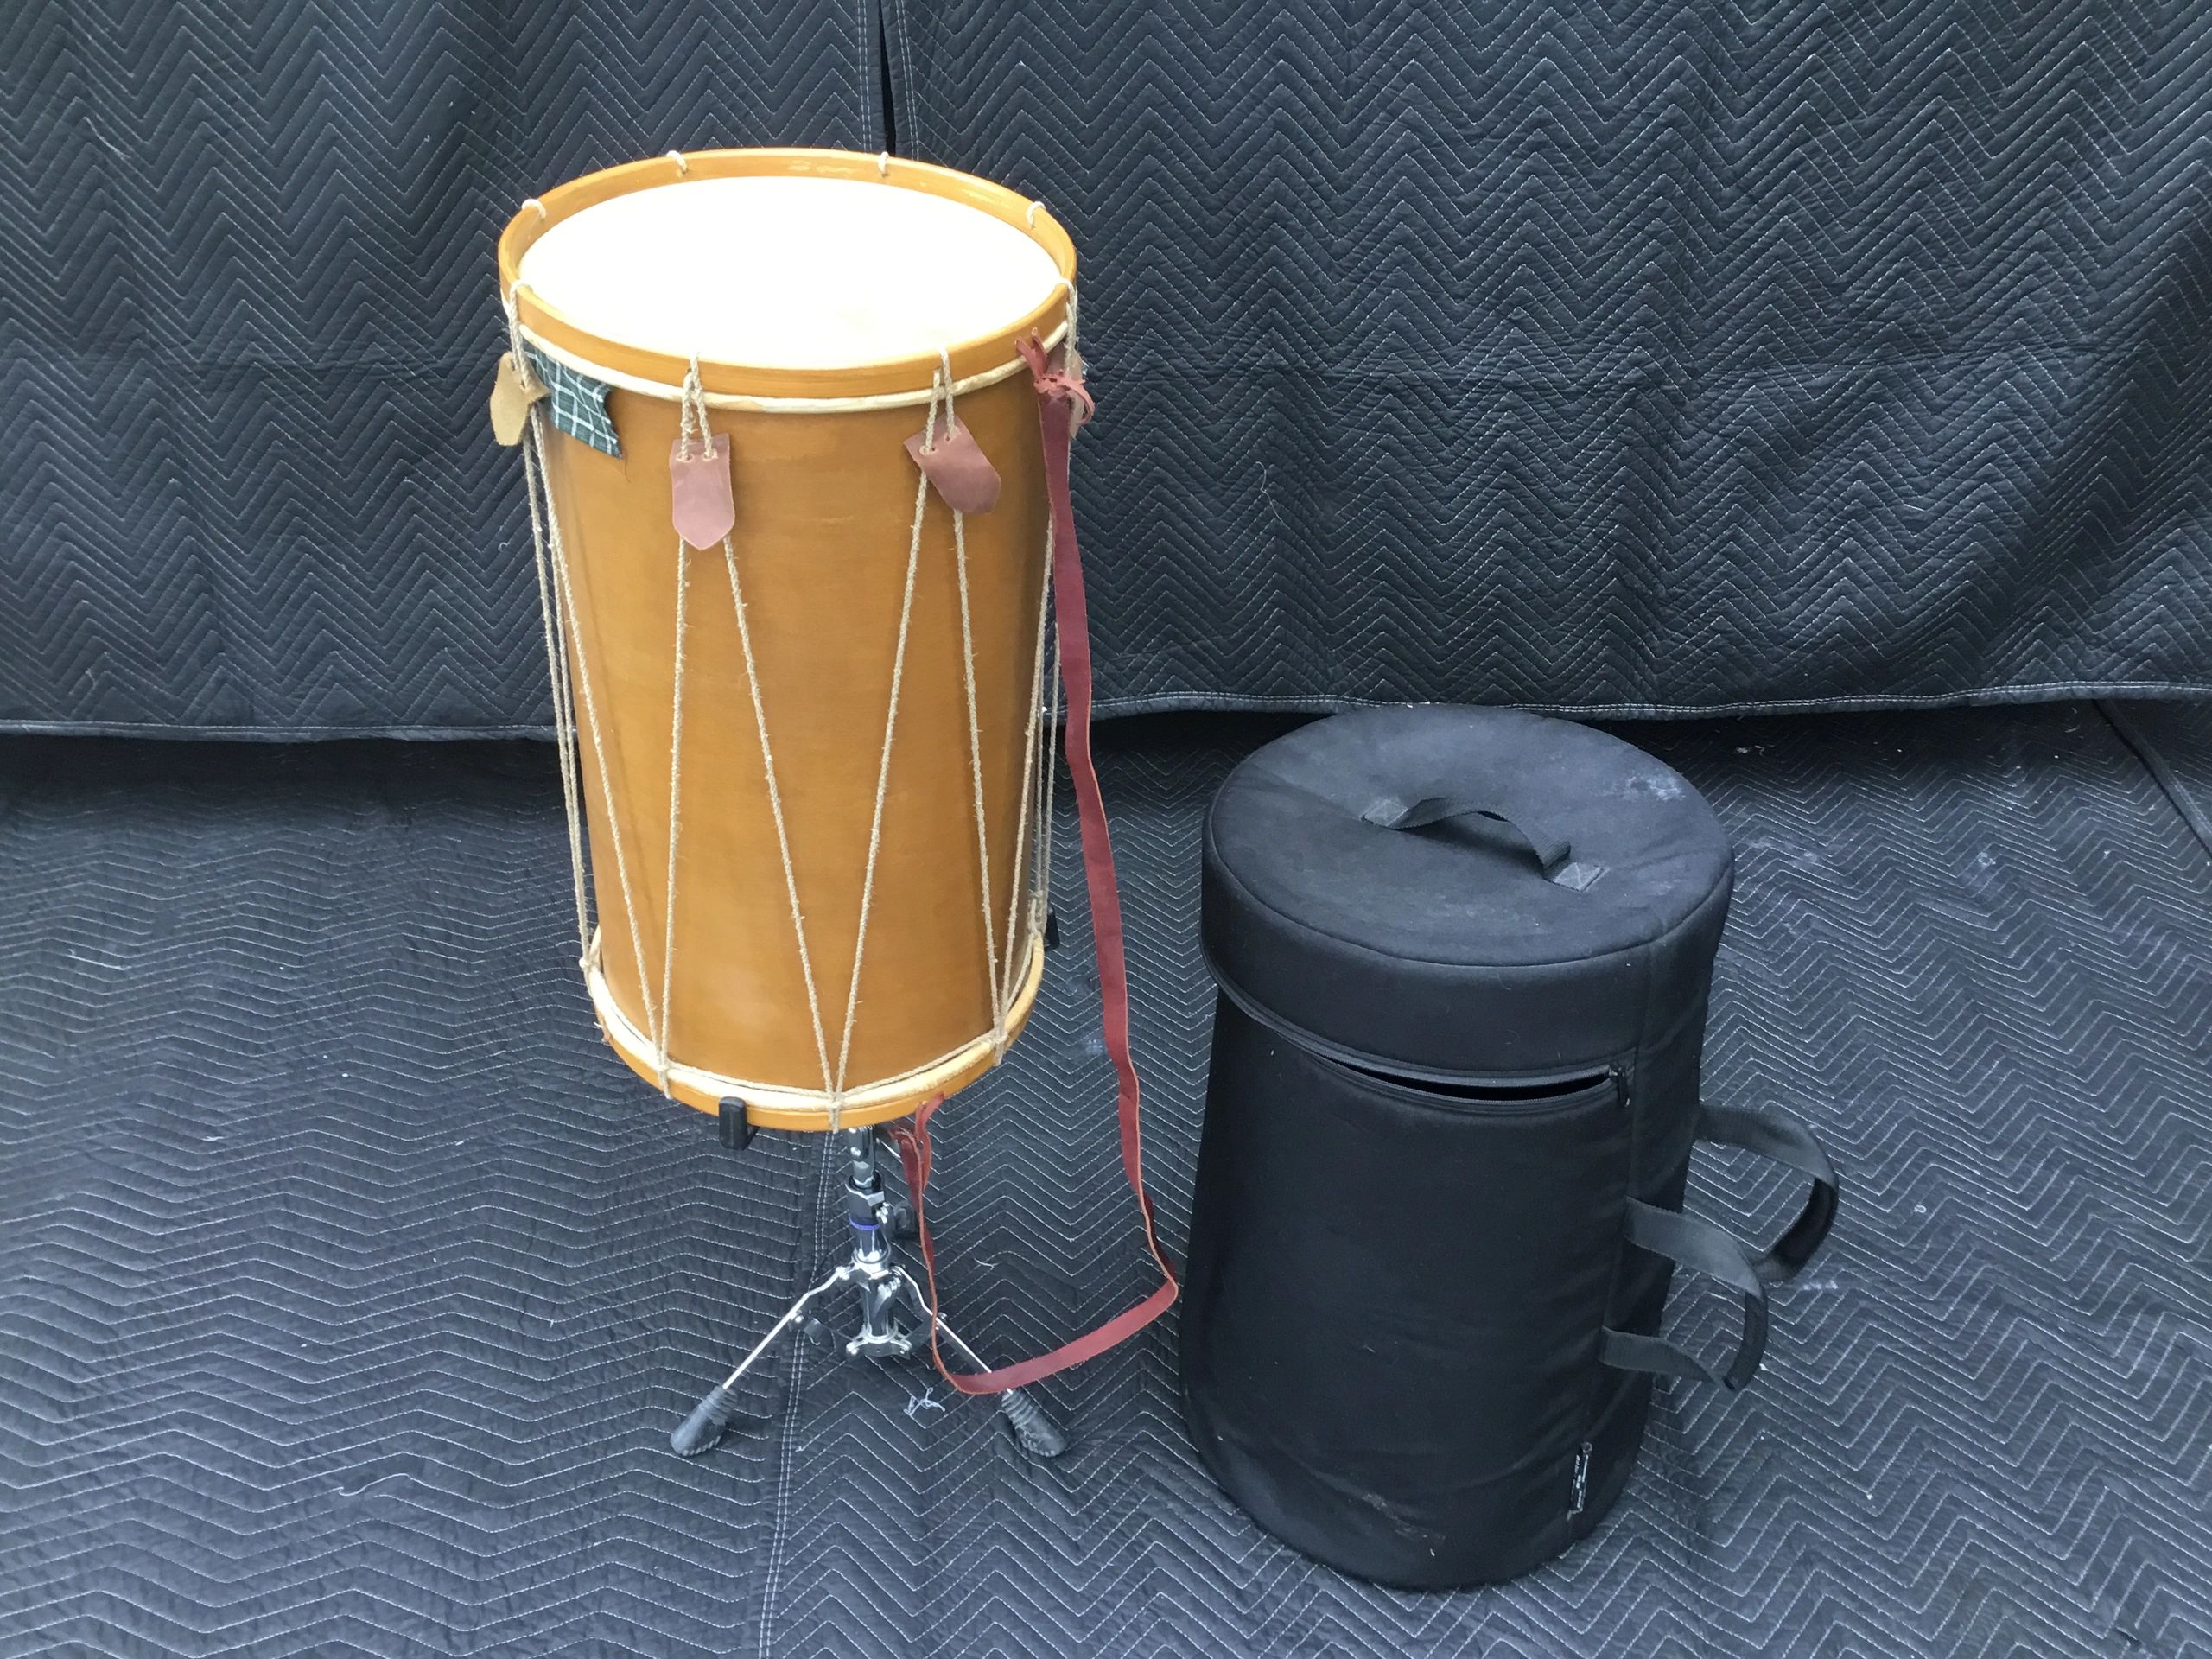 Instruments: Tambour médiéval